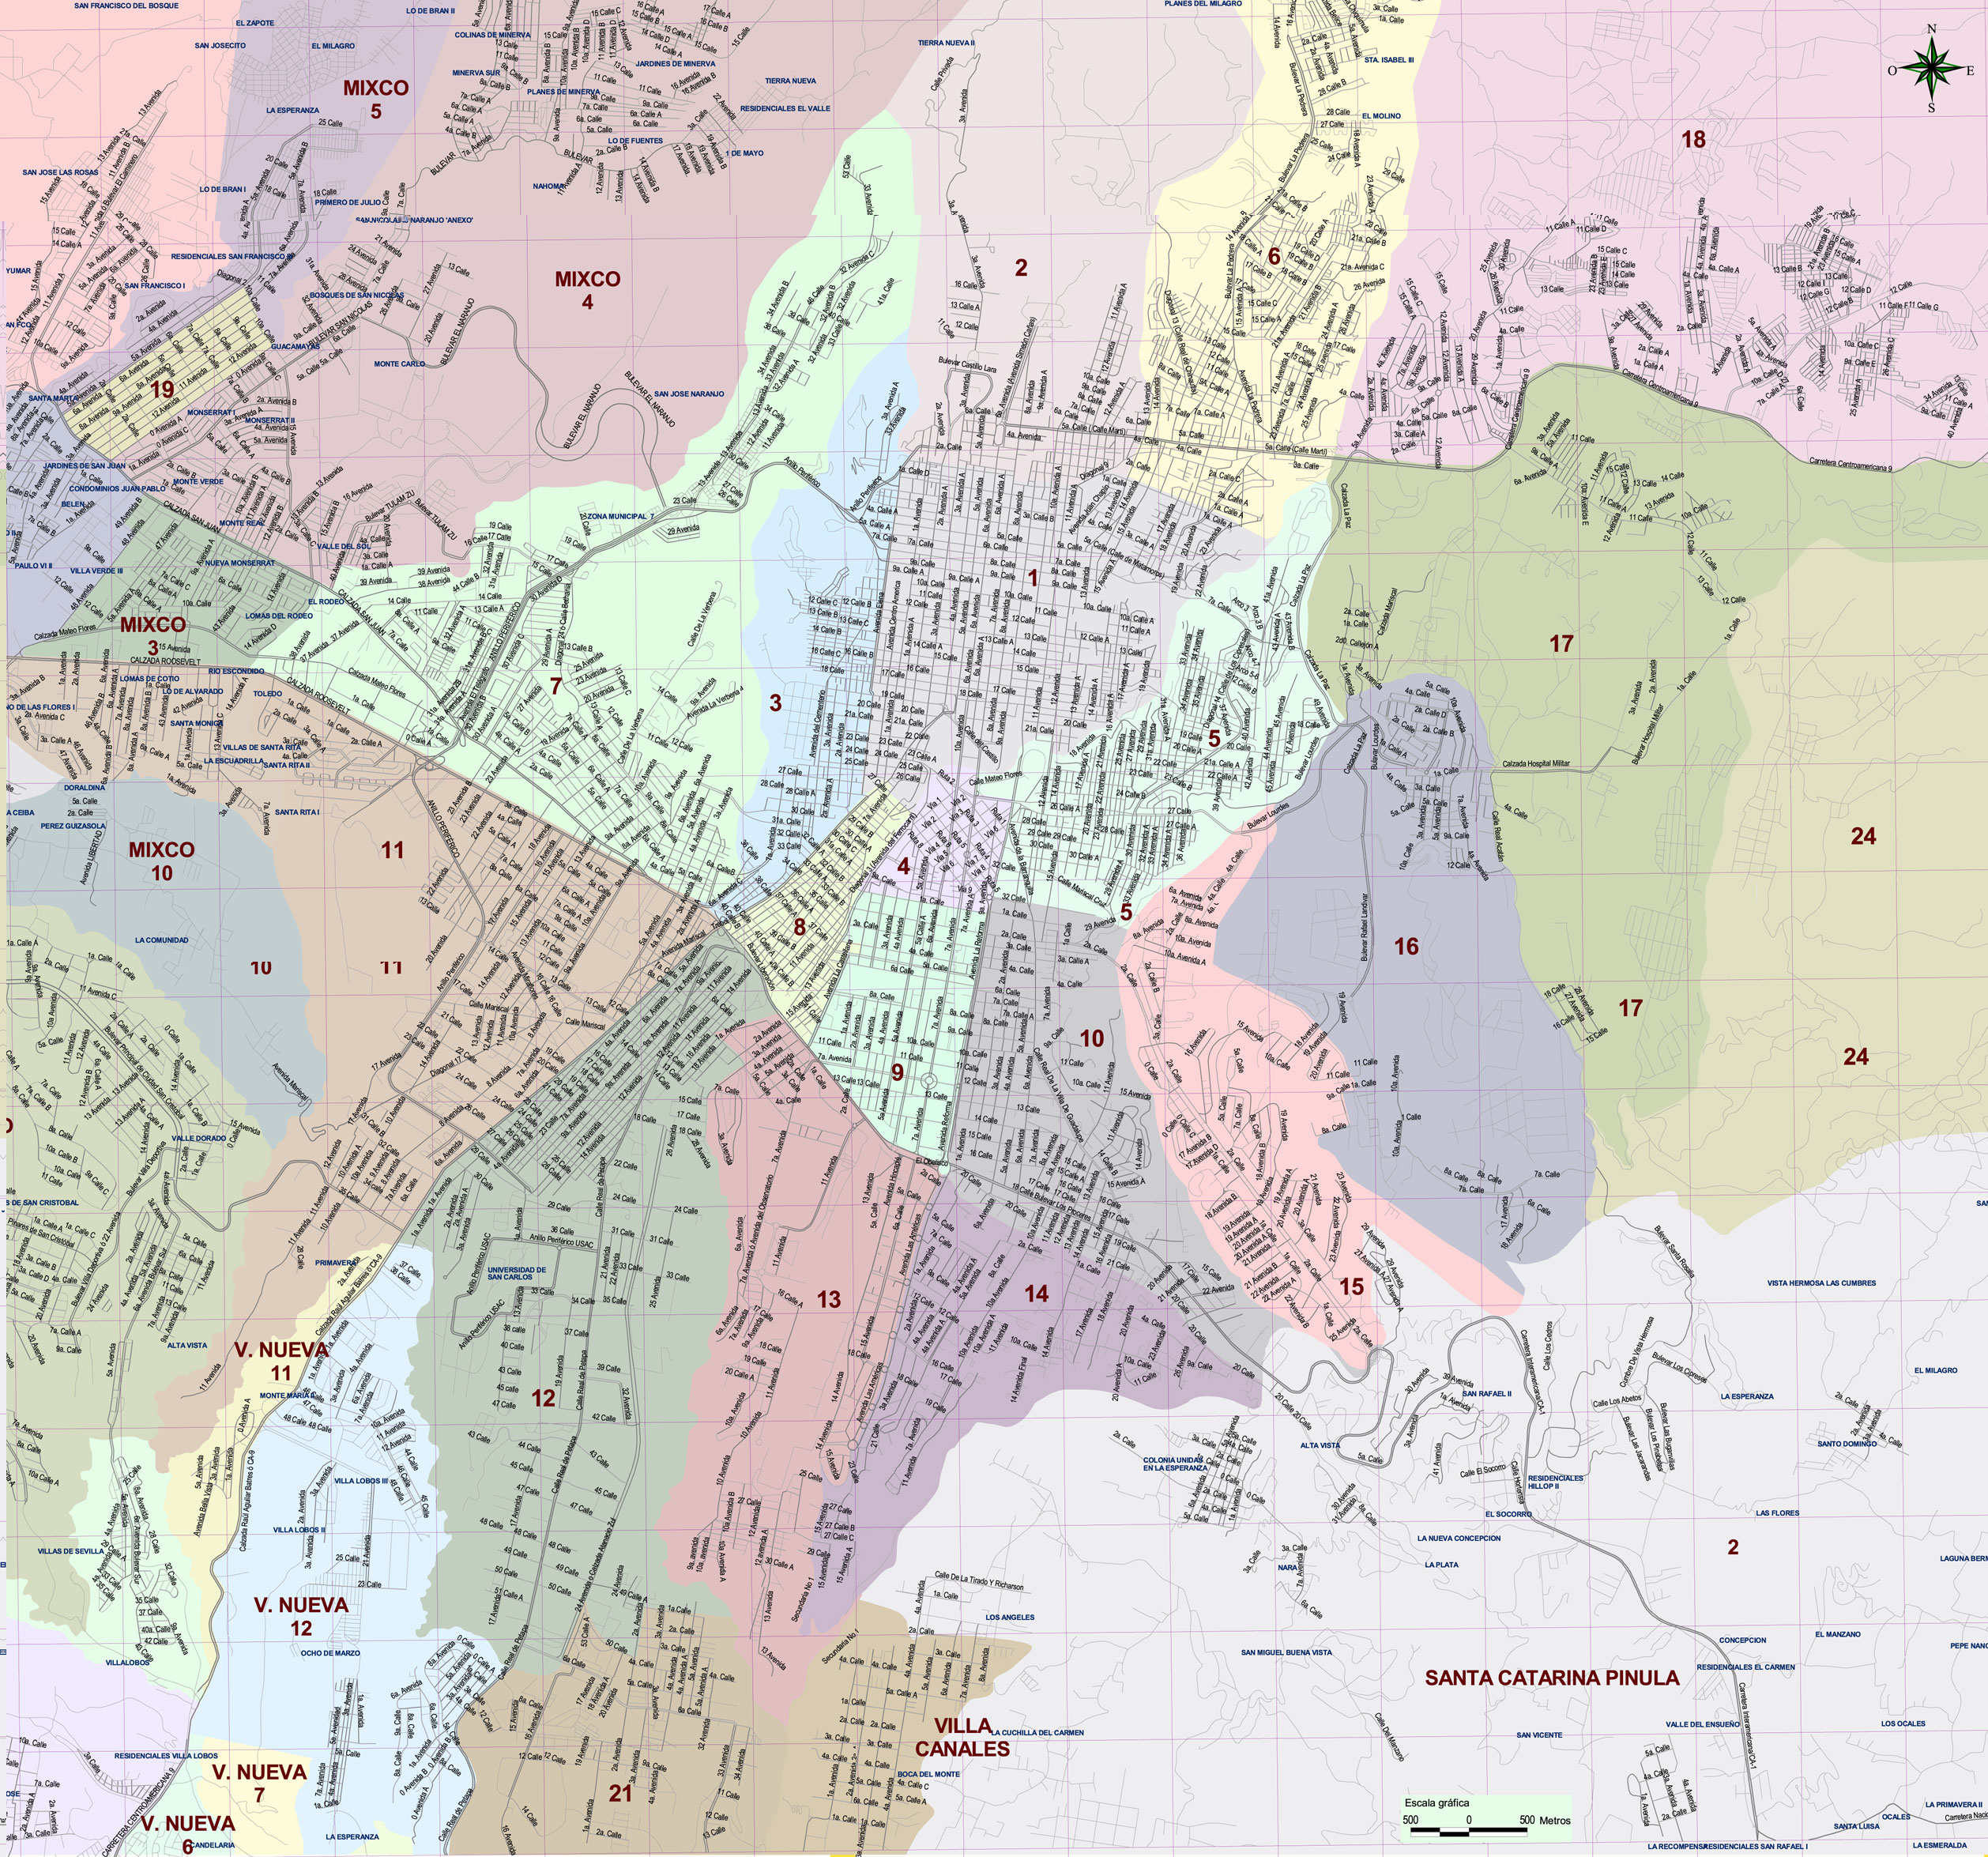 Mapa Ciudad De Guatemala Por Zonas - Image to u